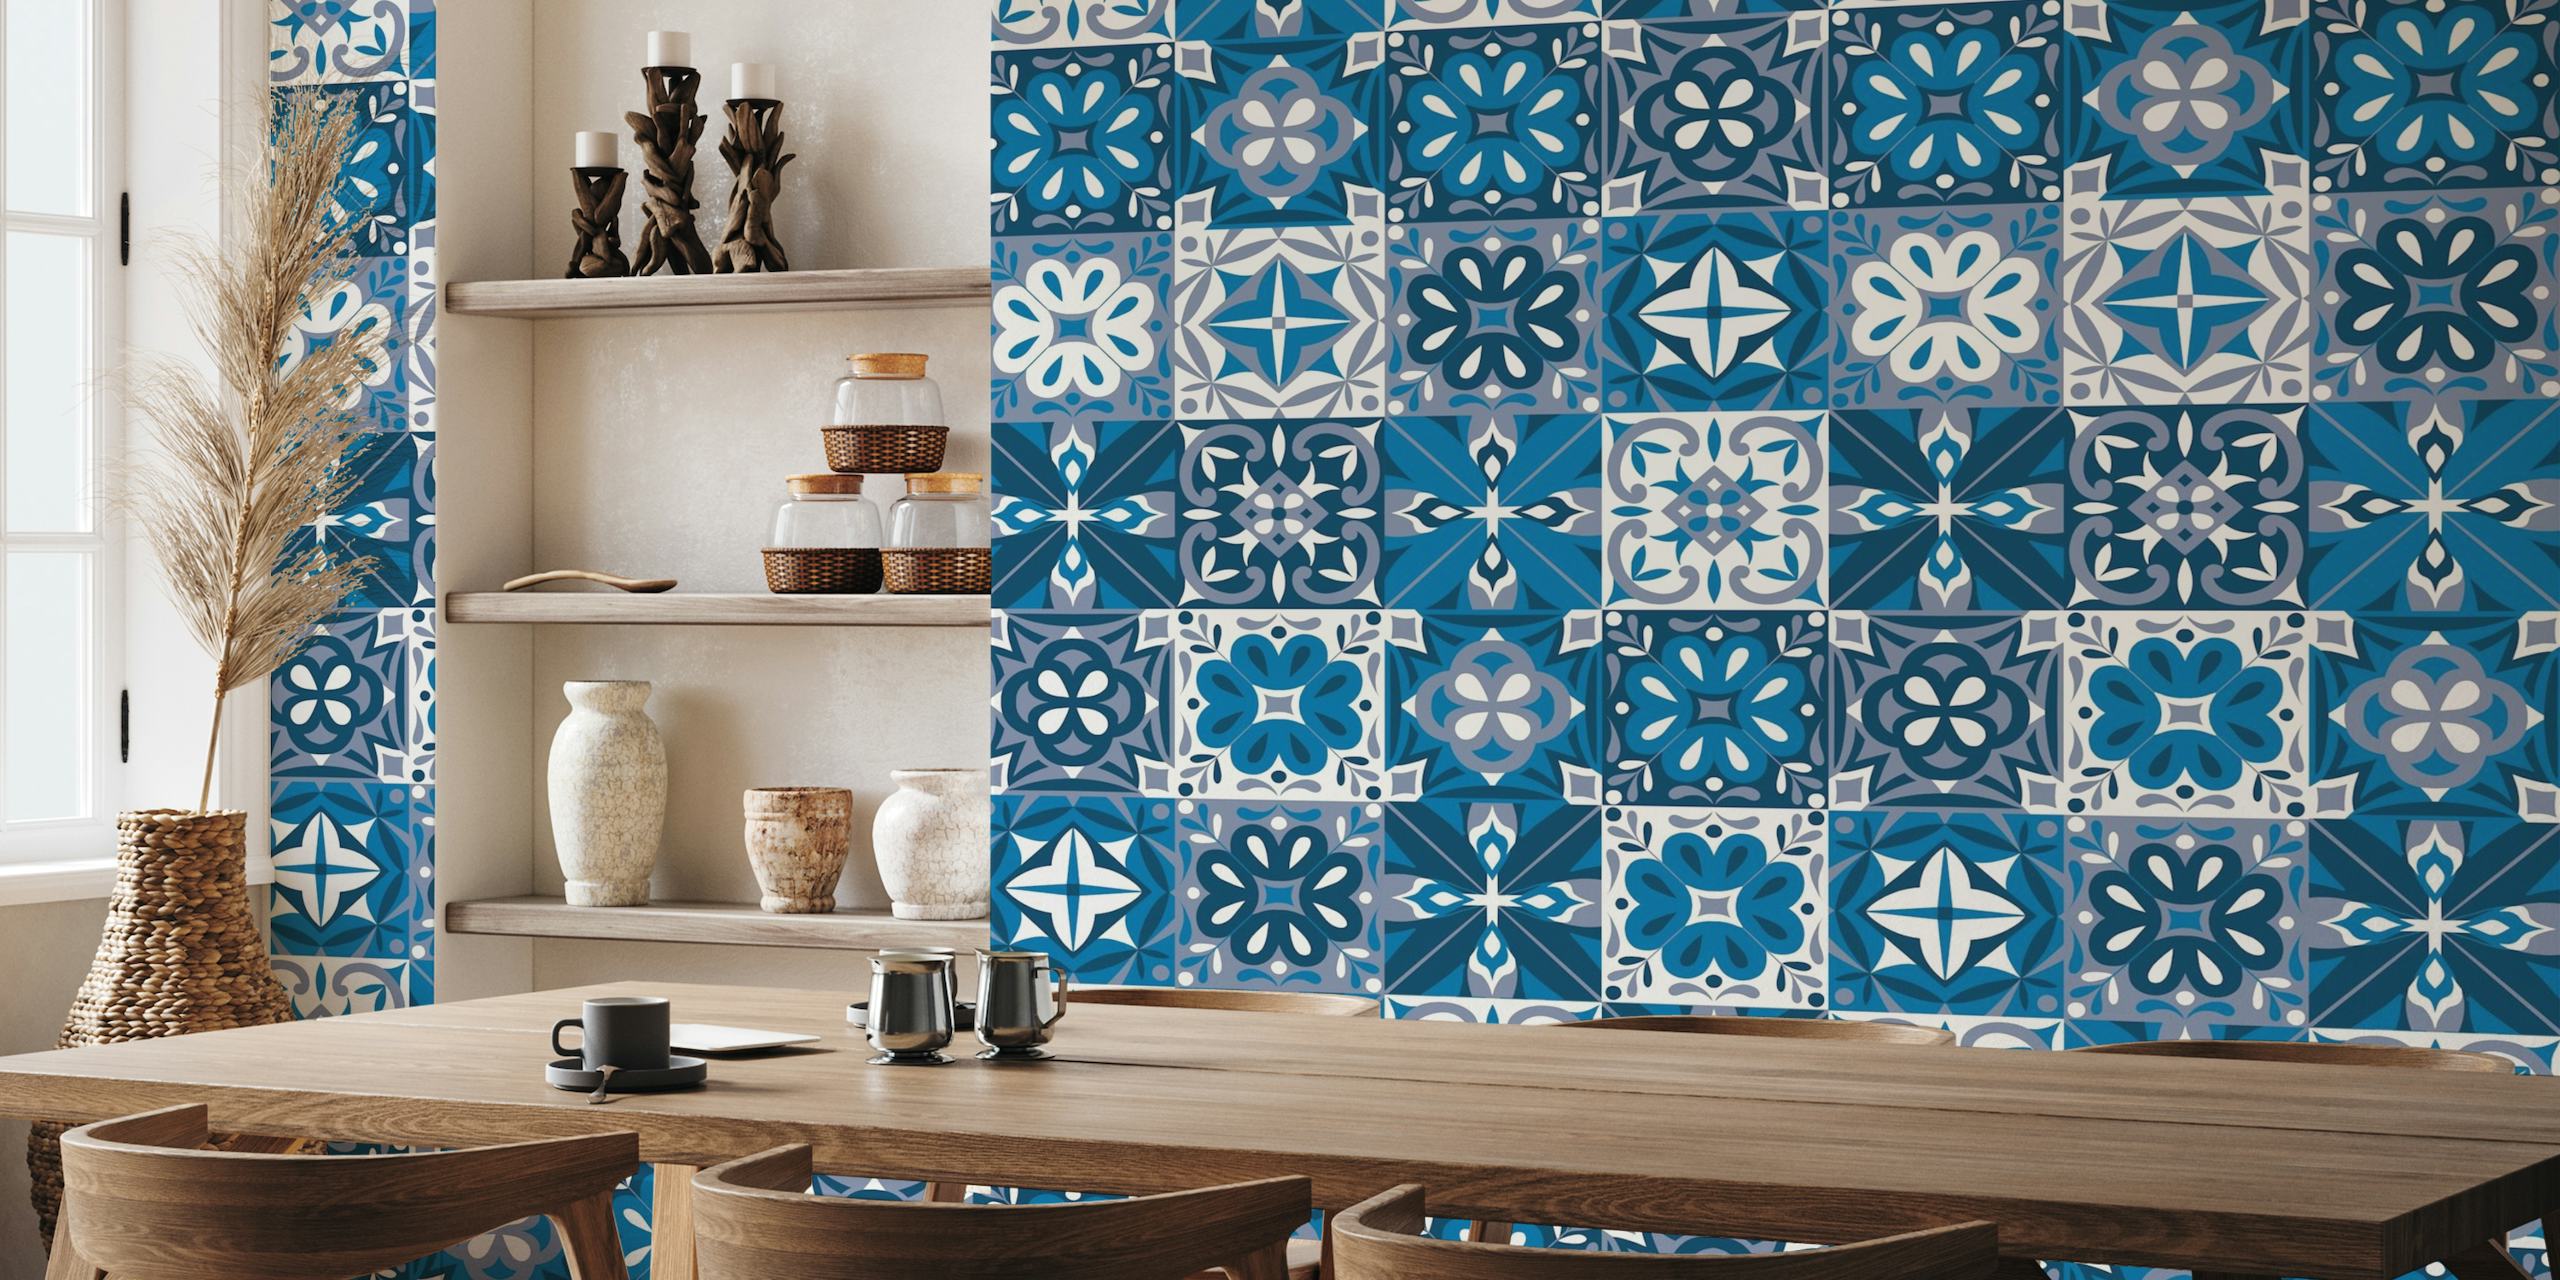 Padrão de azulejo português em azul e branco num mural de parede